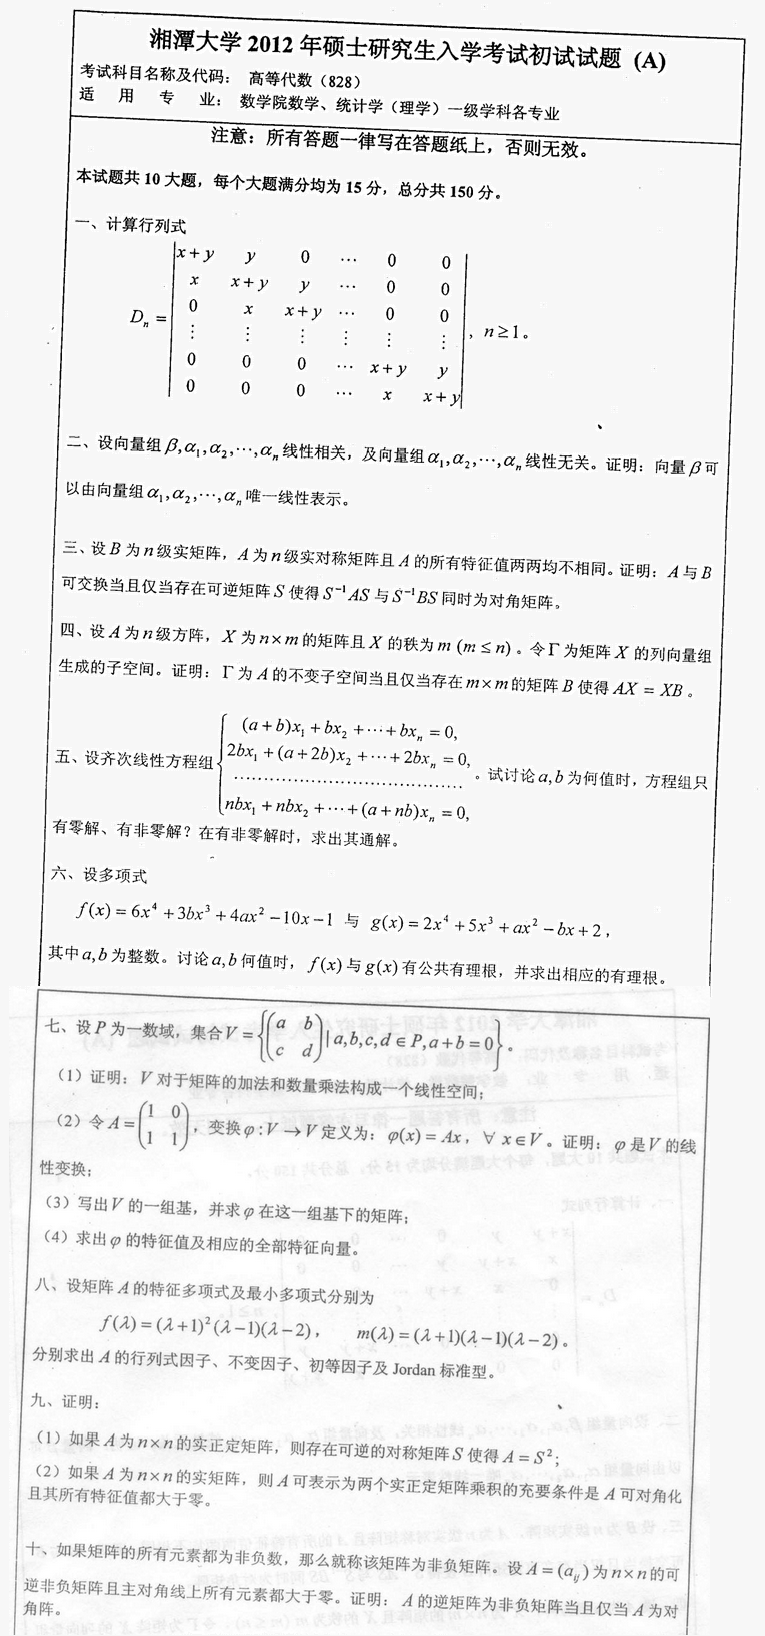 2012湘潭大学考研数学真题（高等代数）.png